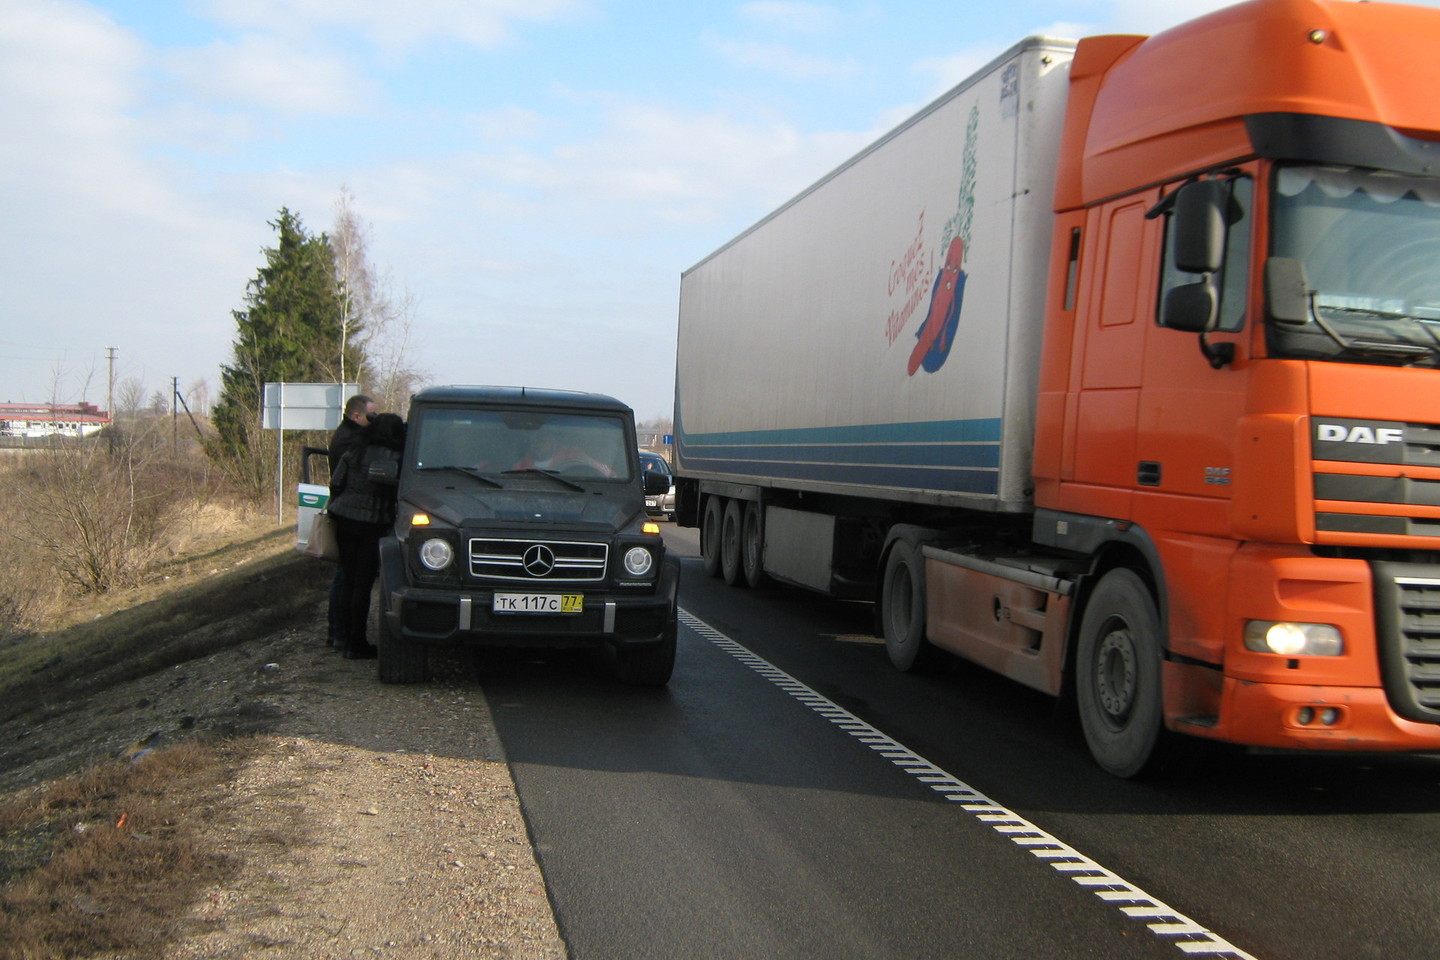 Dideliu greičiu per Lietuvą lekiantį bulgarą kelių policijos pareigūnai sustabdė netoli Marijampolės.<br>L.Juodzevičienės nuotr.